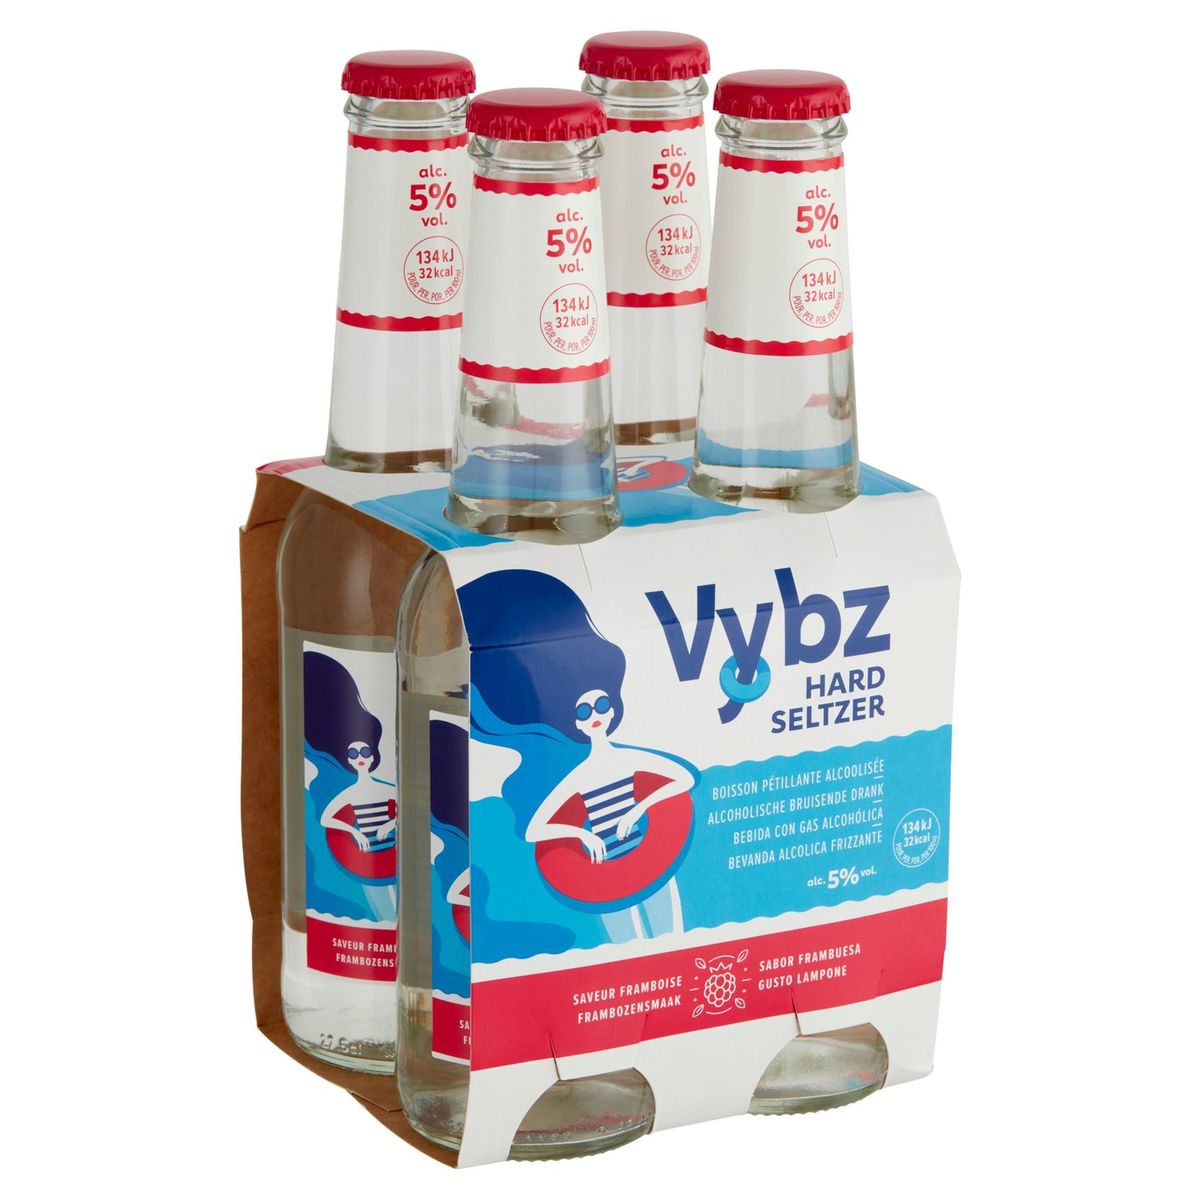 Vybz Hard Seltzer Pétillant Alcoolosée Saveur Framboise 4 x 27.5 cl